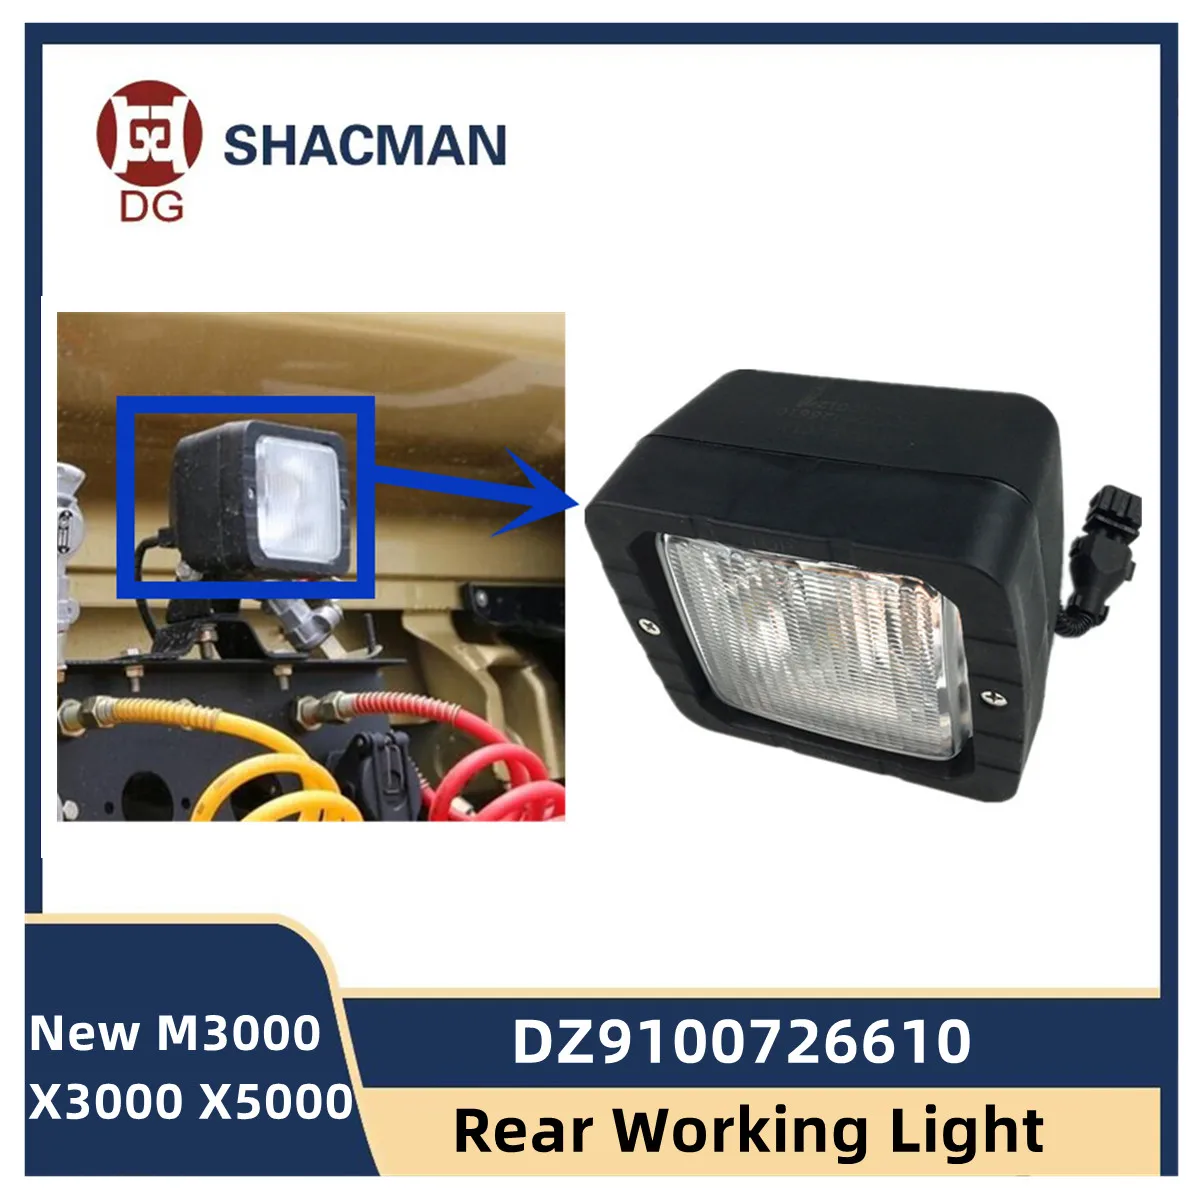 DZ9100726610 Задний Рабочий фонарь для SHACMAN Shaanxi New M3000 X3000 X5000 задний фонарь кабины в сборе